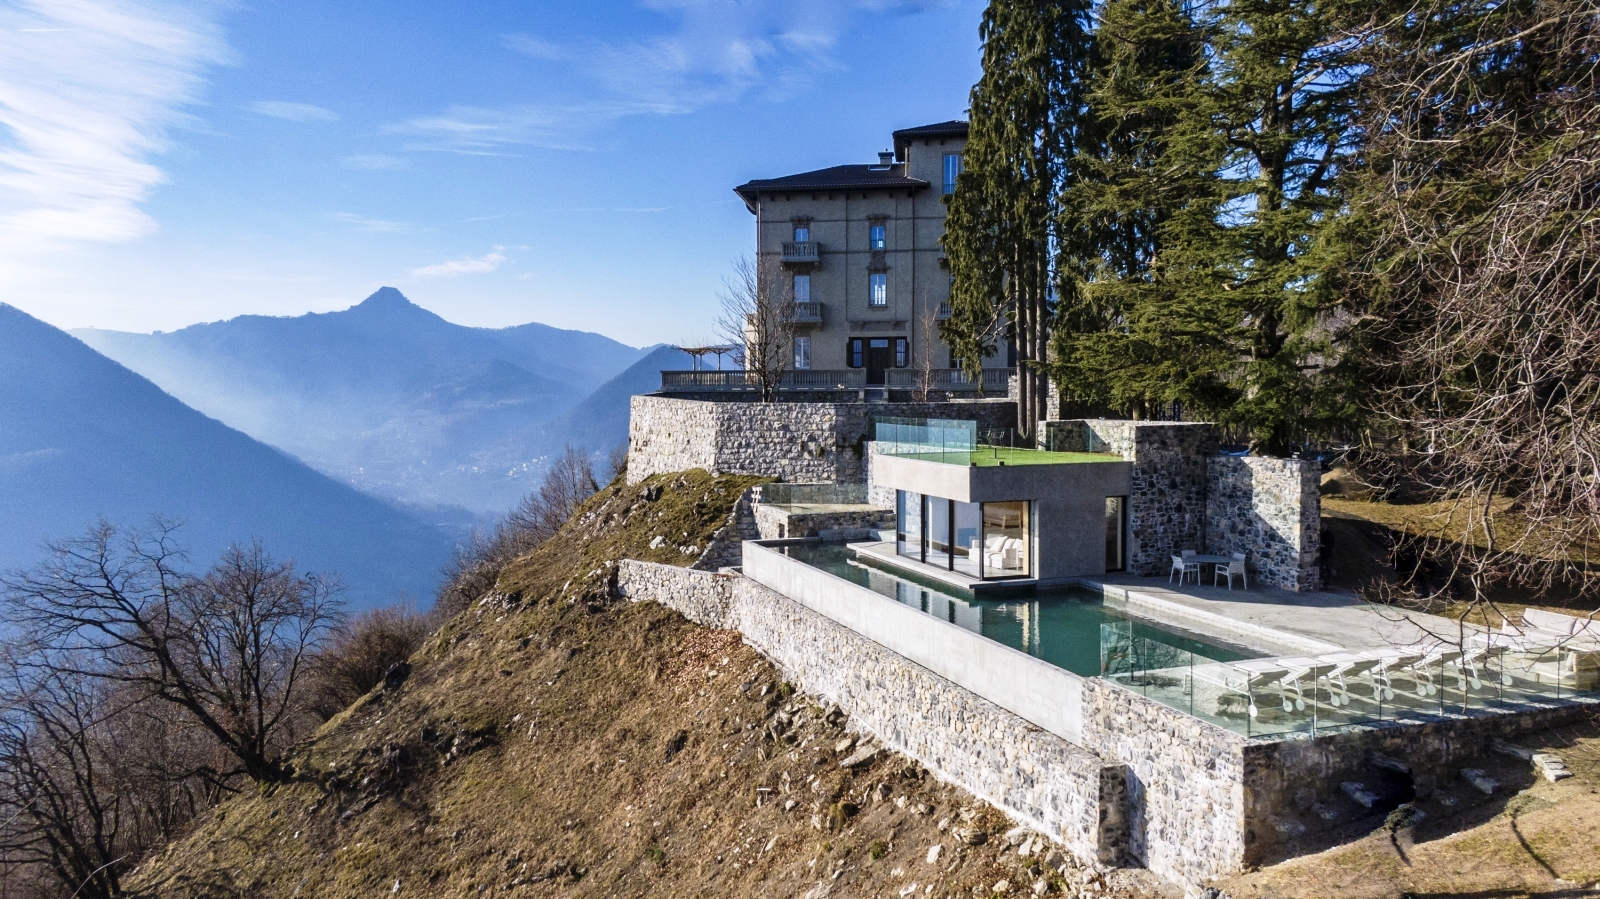 Villa complex with mountains in the background at Villa della Vetta on Lake Como in Italy